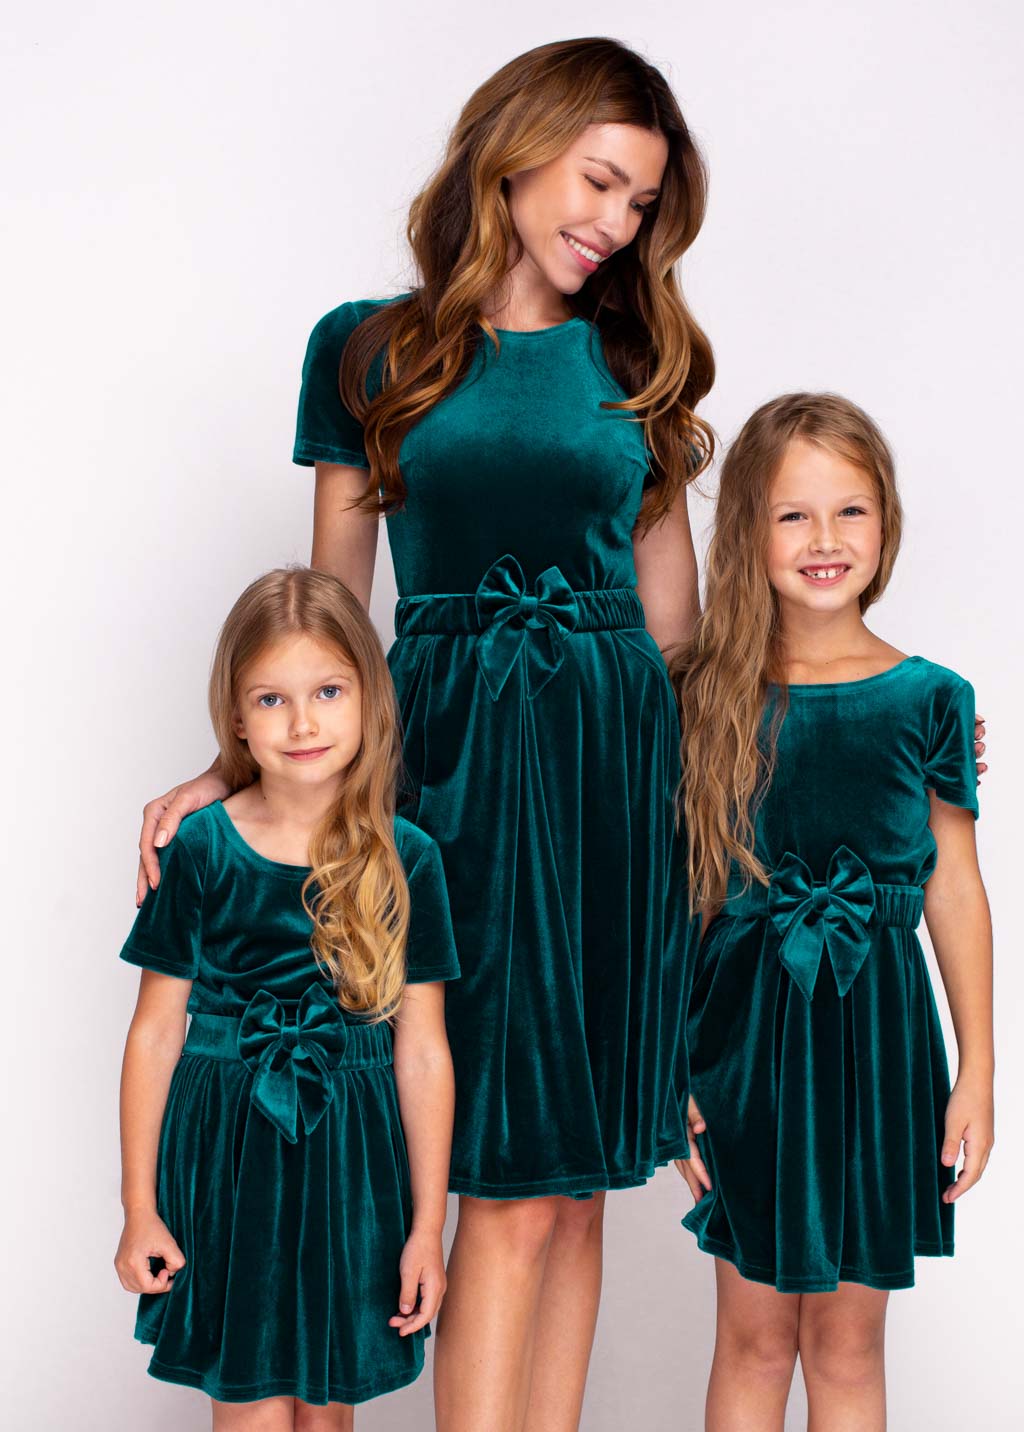 Mommy and me teal green velvet dresses